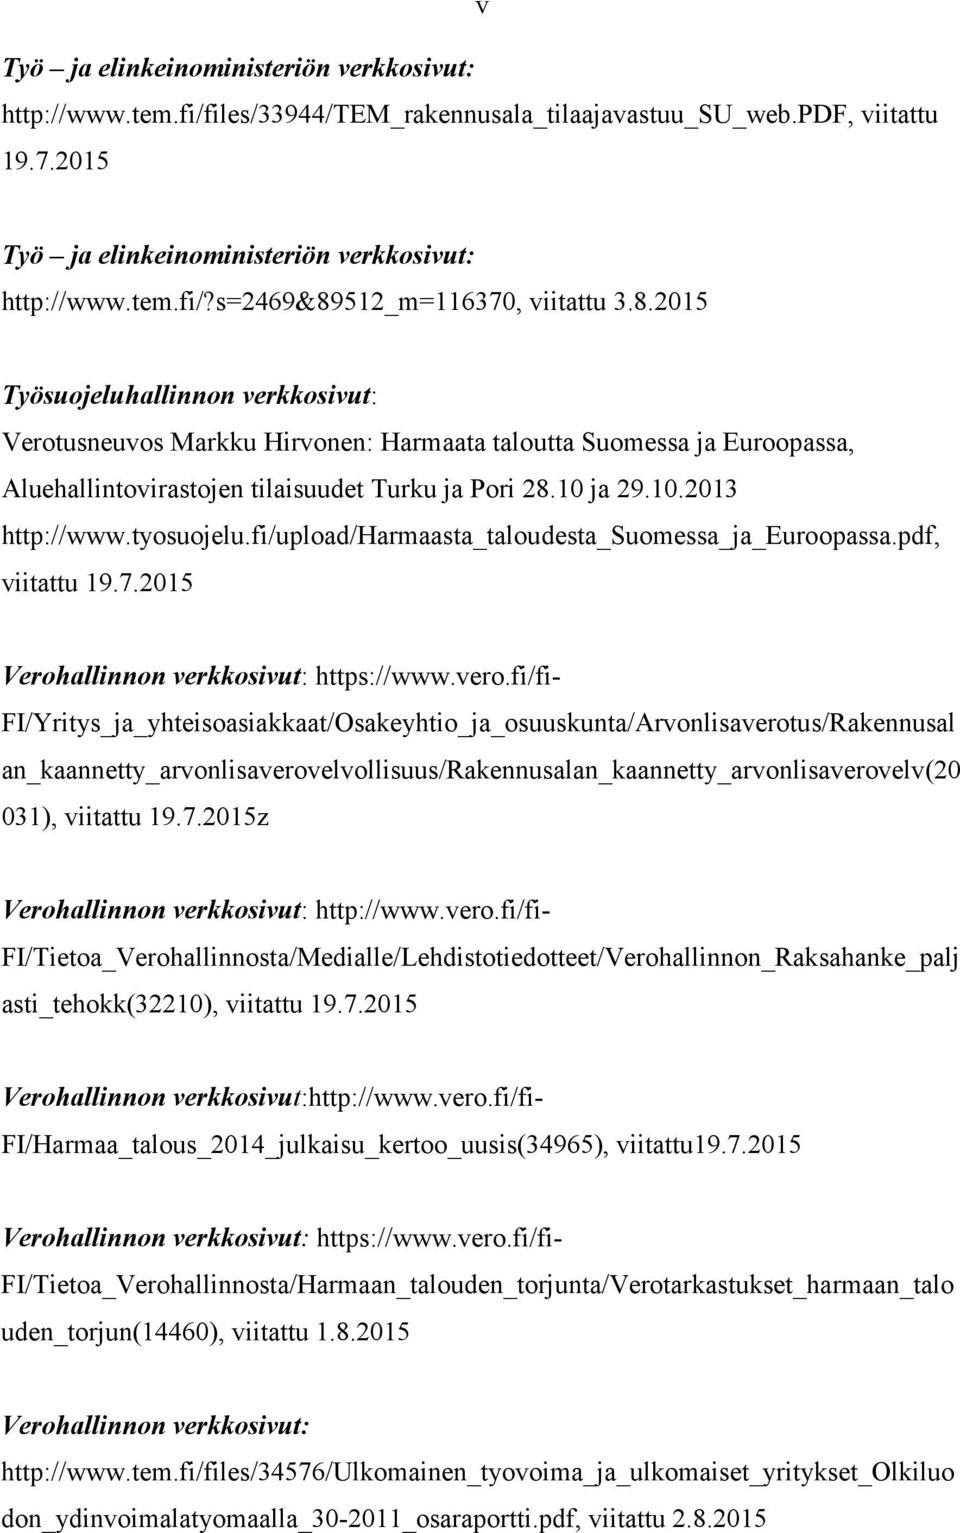 tyosuojelu.fi/upload/harmaasta_taloudesta_suomessa_ja_euroopassa.pdf, viitattu 19.7.2015 Verohallinnon verkkosivut: https://www.vero.